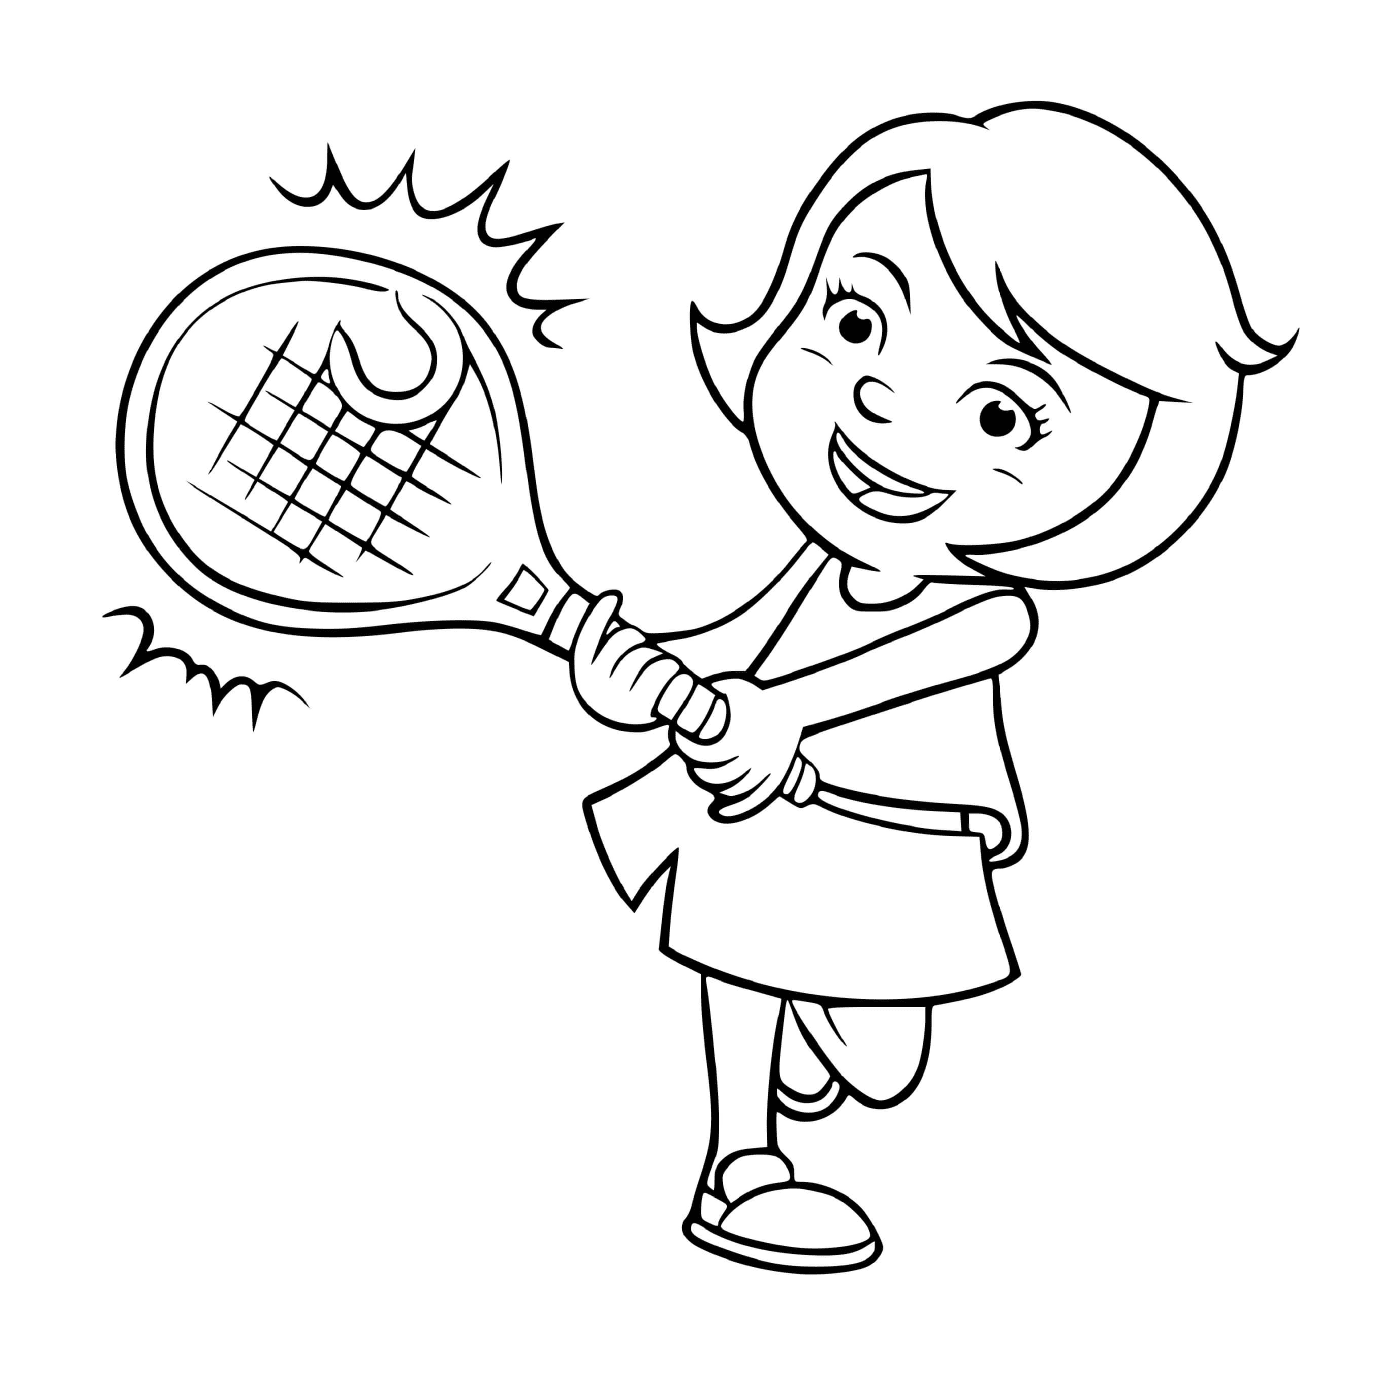  Una ragazza gioca a tennis 